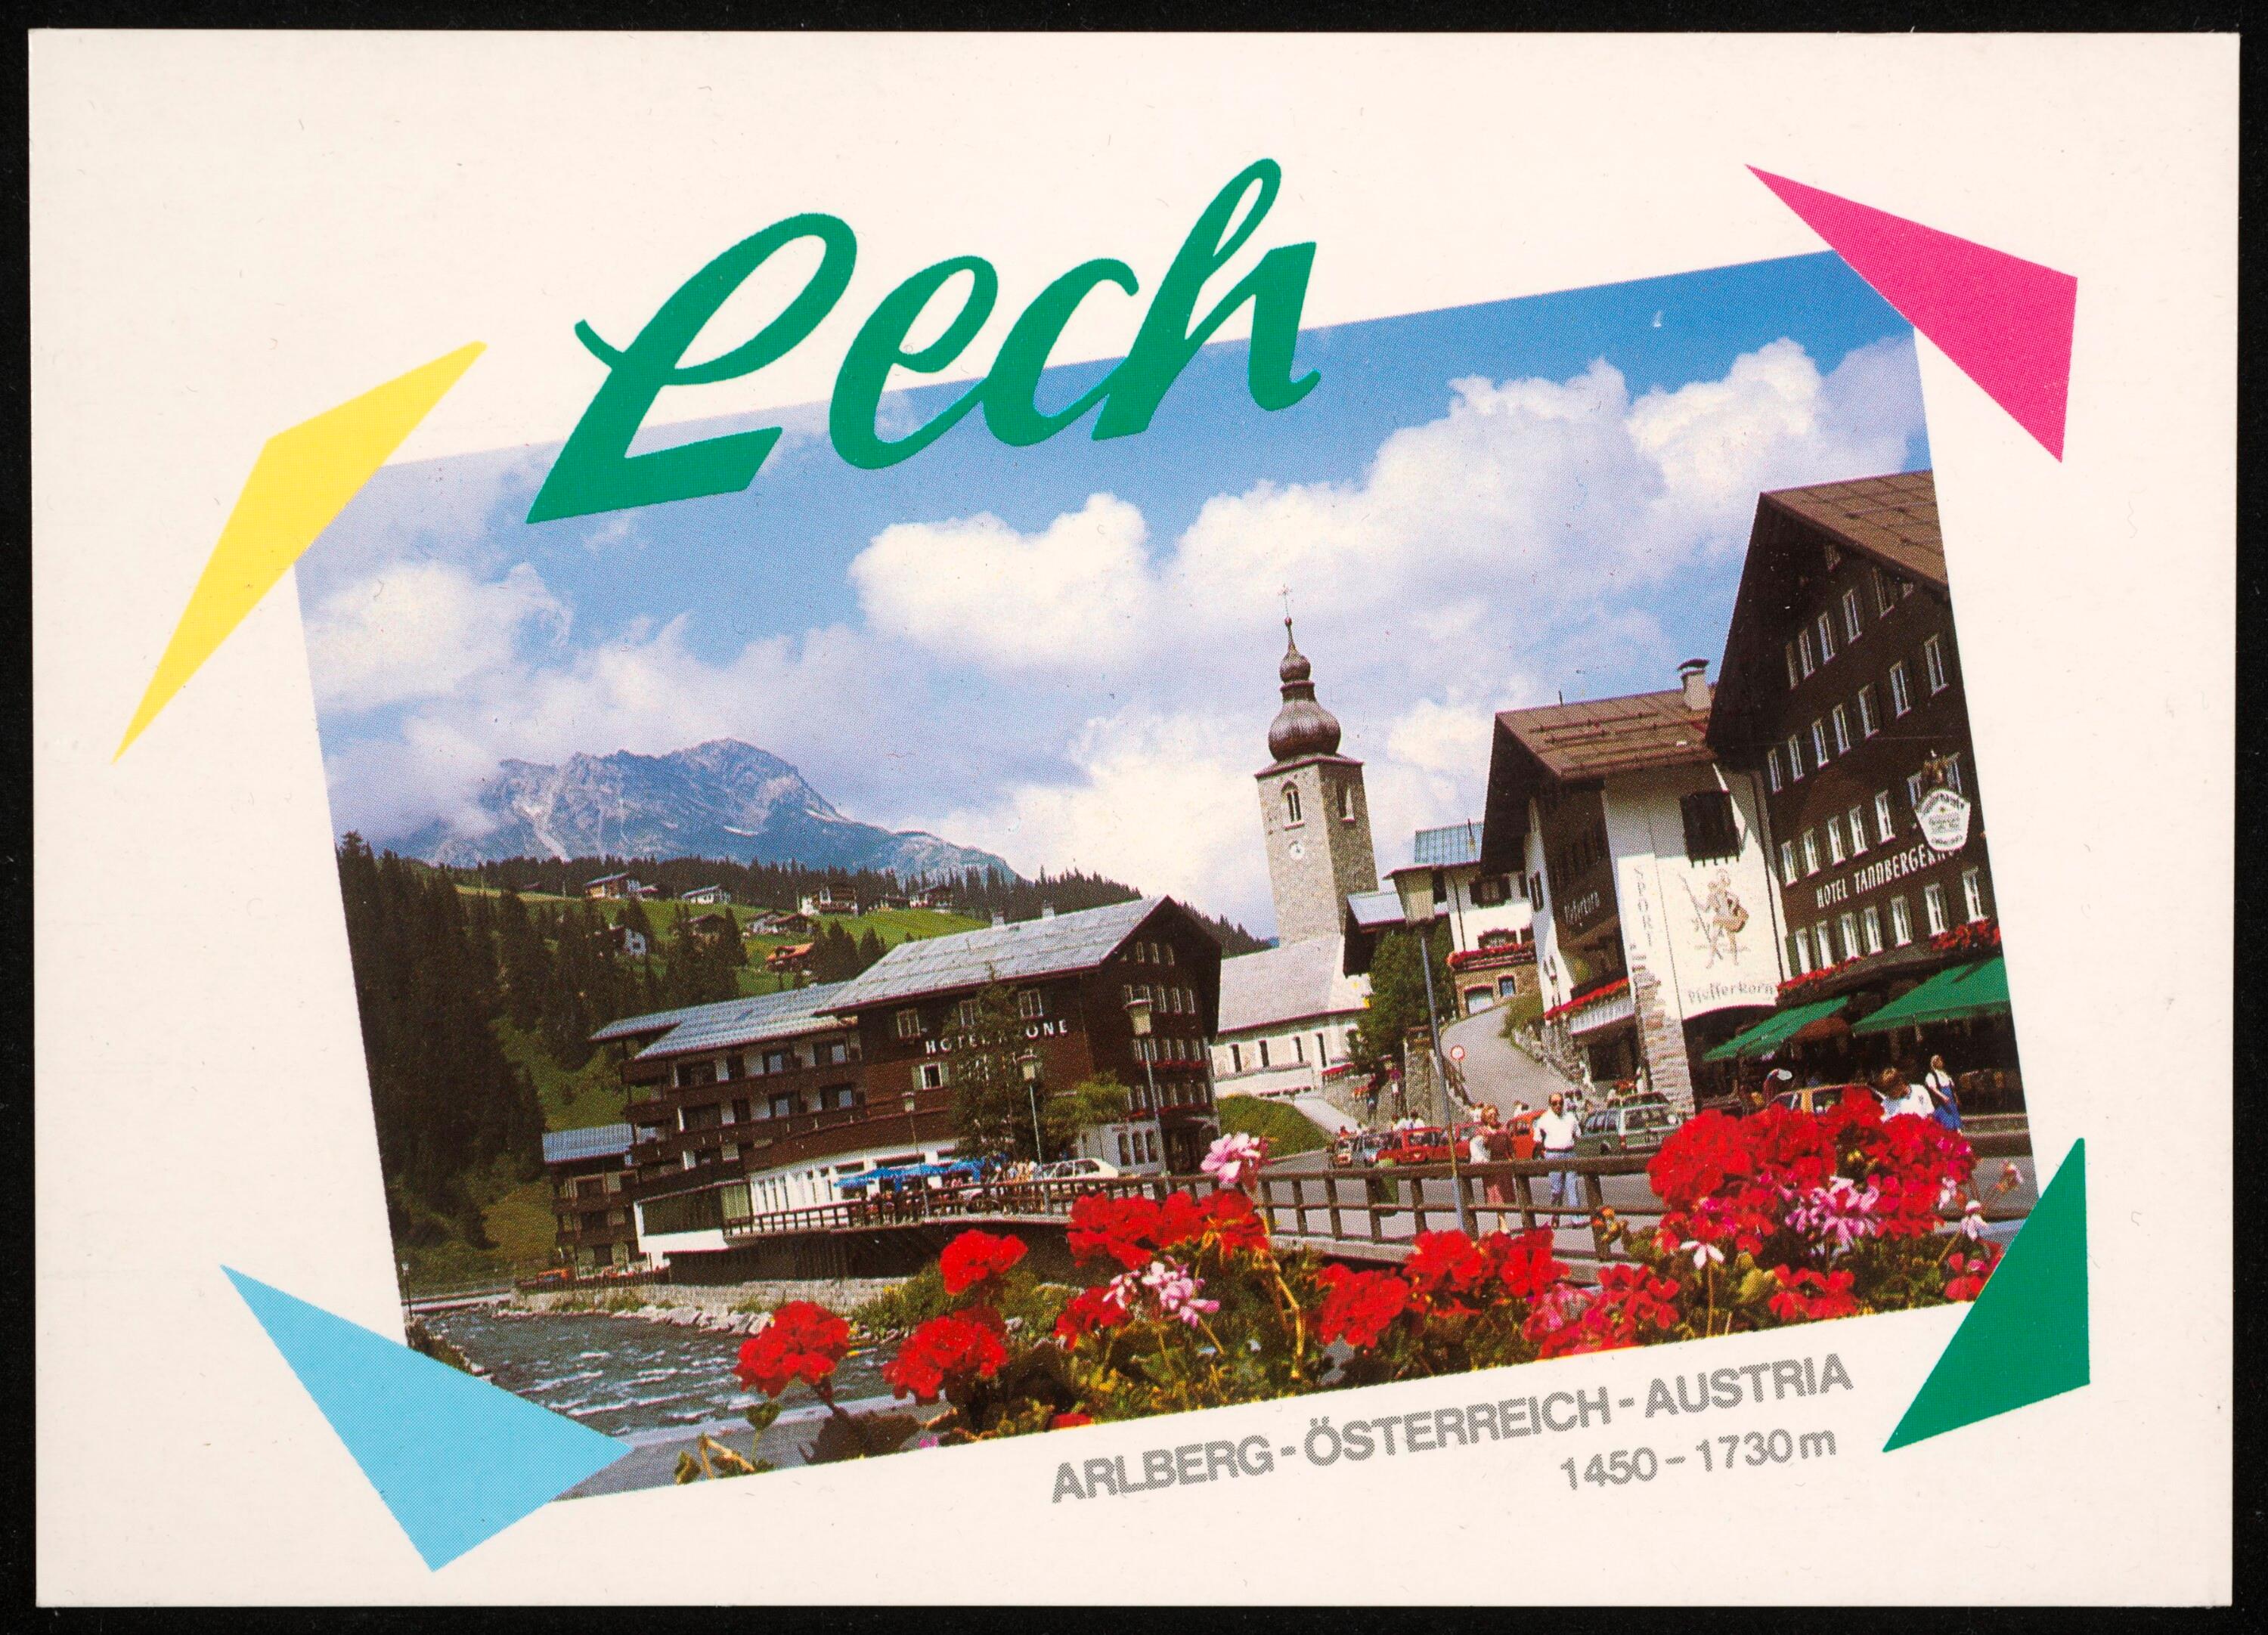 Lech Arlberg-Österreich-Austria 1450-1730m></div>


    <hr>
    <div class=